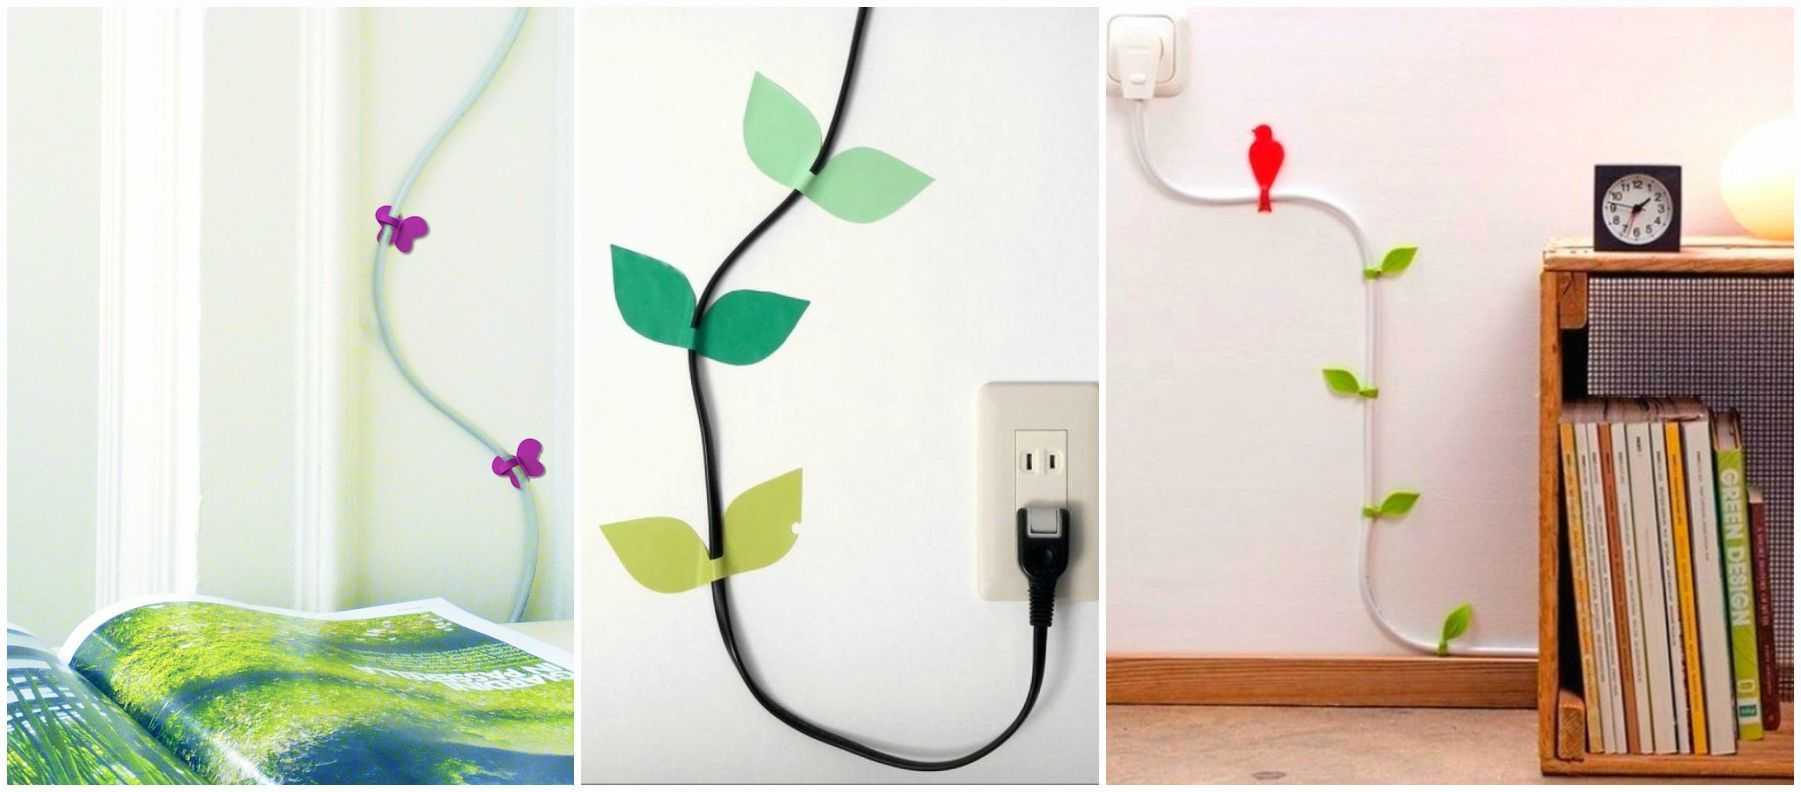 Как спрятать провода на стене, обзор технических способов и креативных идей - 18 фото